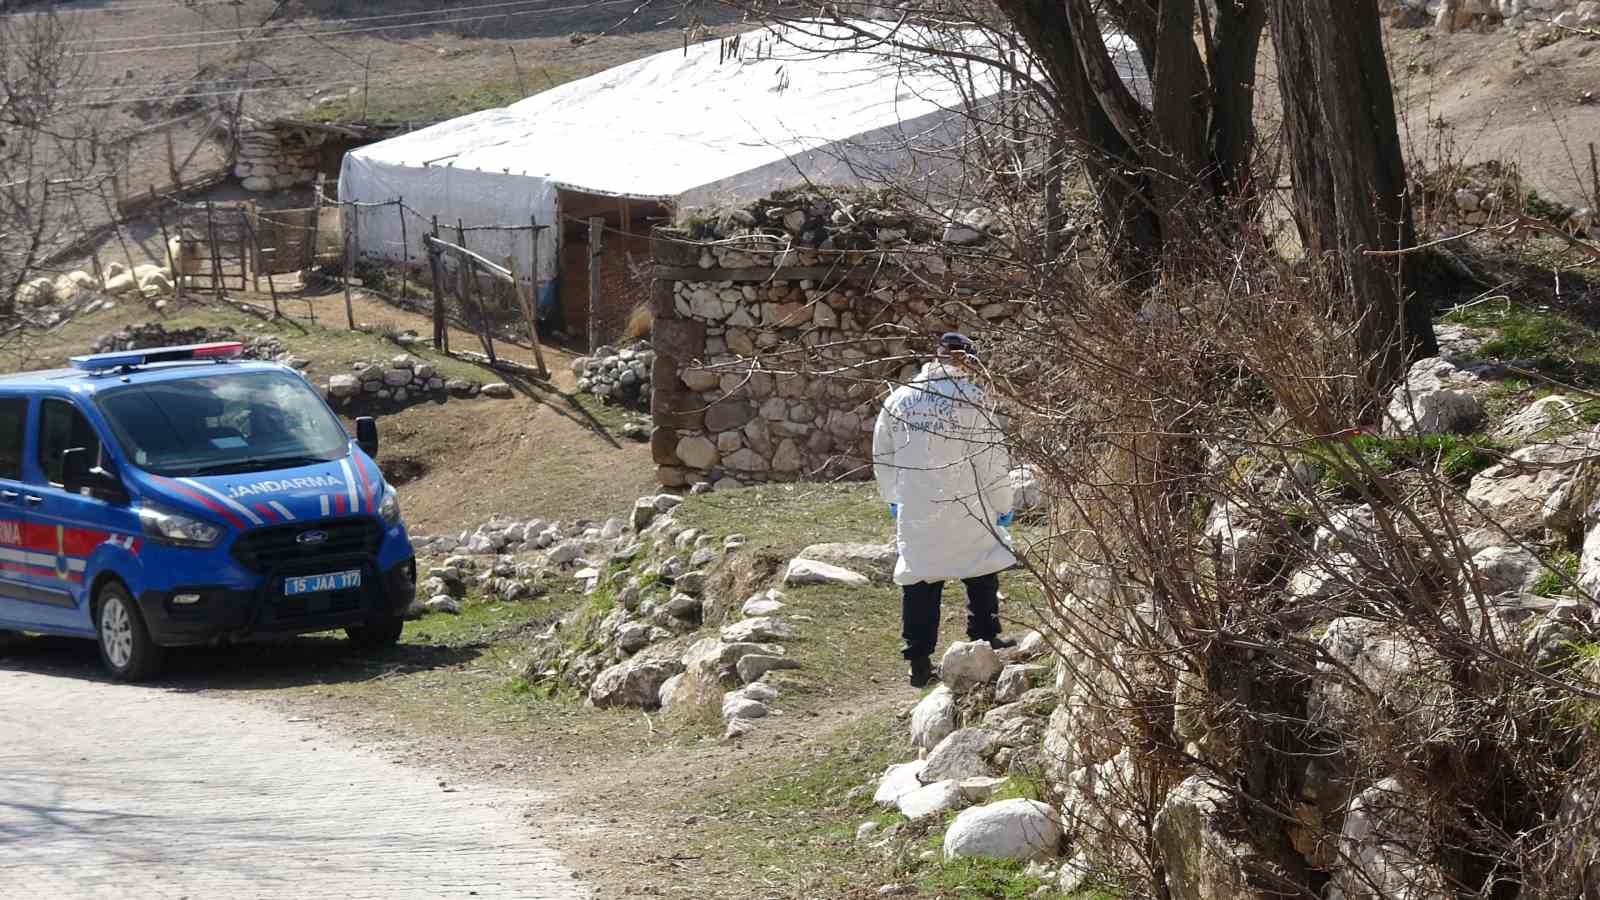 Burdur’da ağılda ölü bulunan çoban olayında 3 kişi adliyeye sevk edildi
